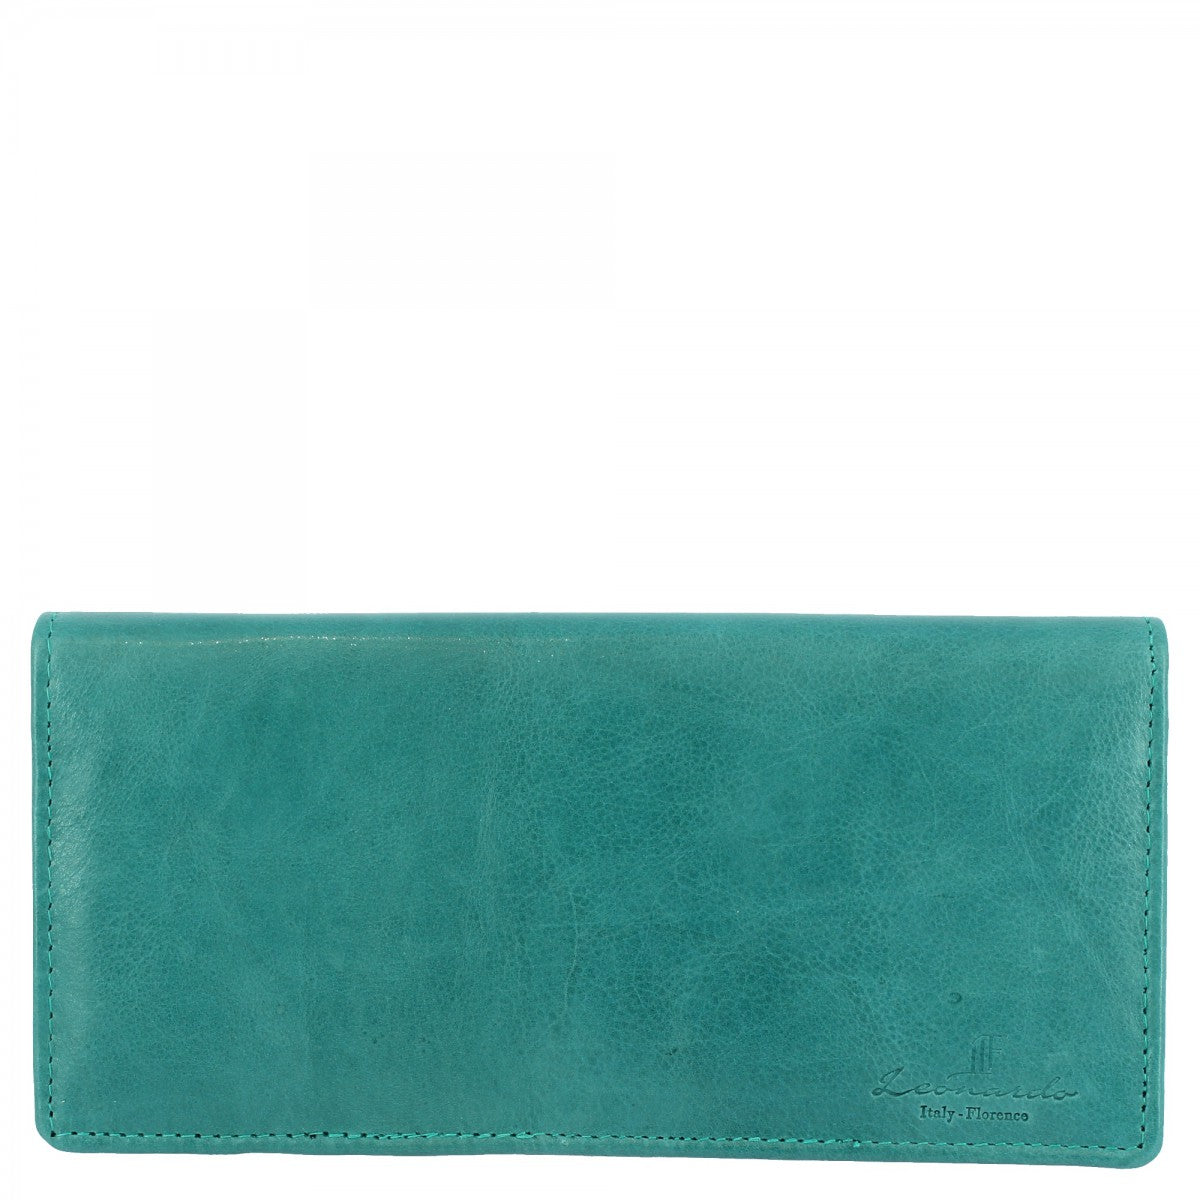 Portafogli da donna realizzato in nappa per banconote carte di credito in vari colori